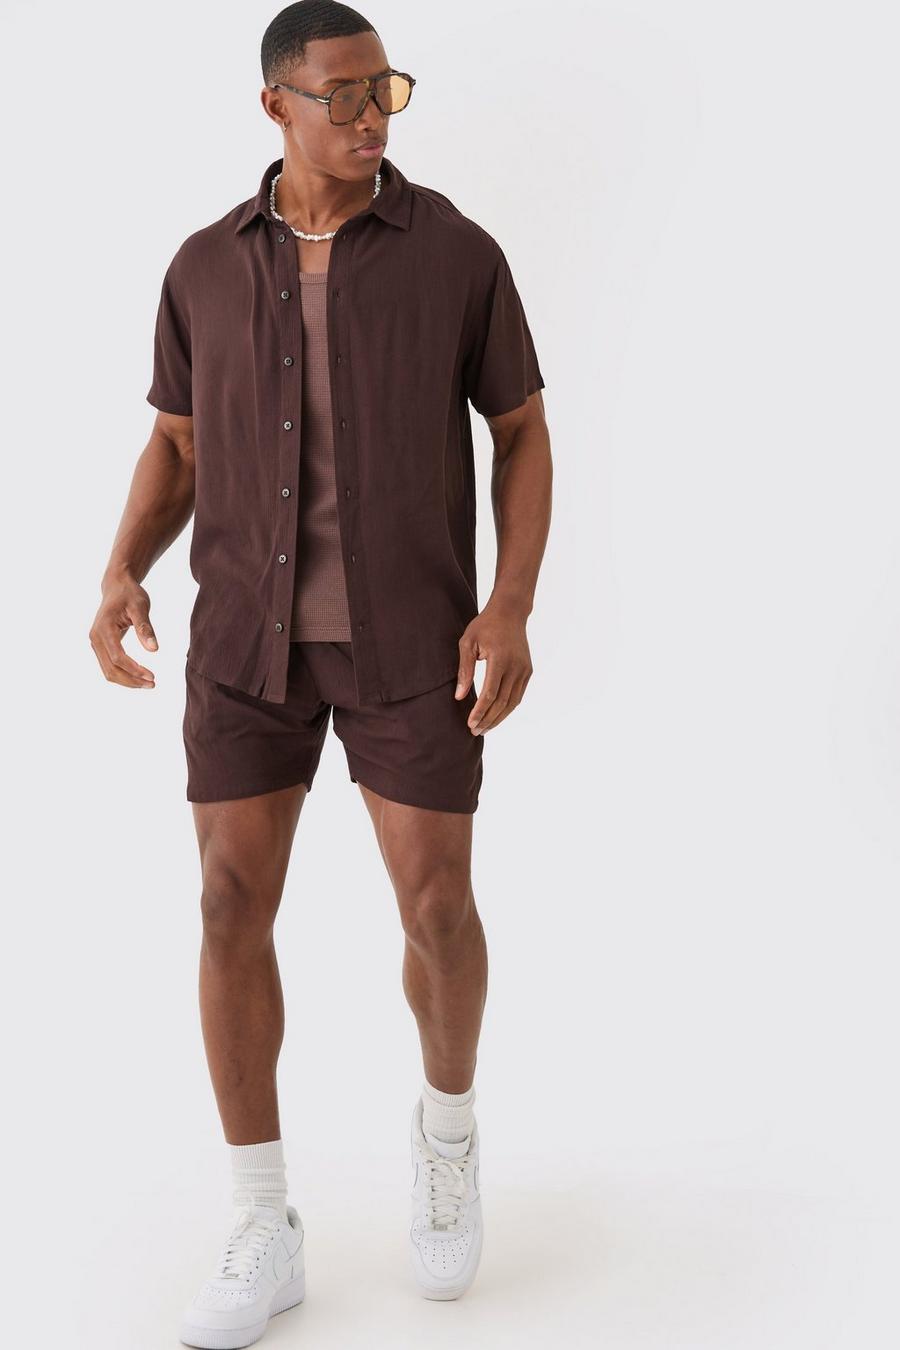 Brown Short Sleeve Cheese Cloth Shirt And Short Set